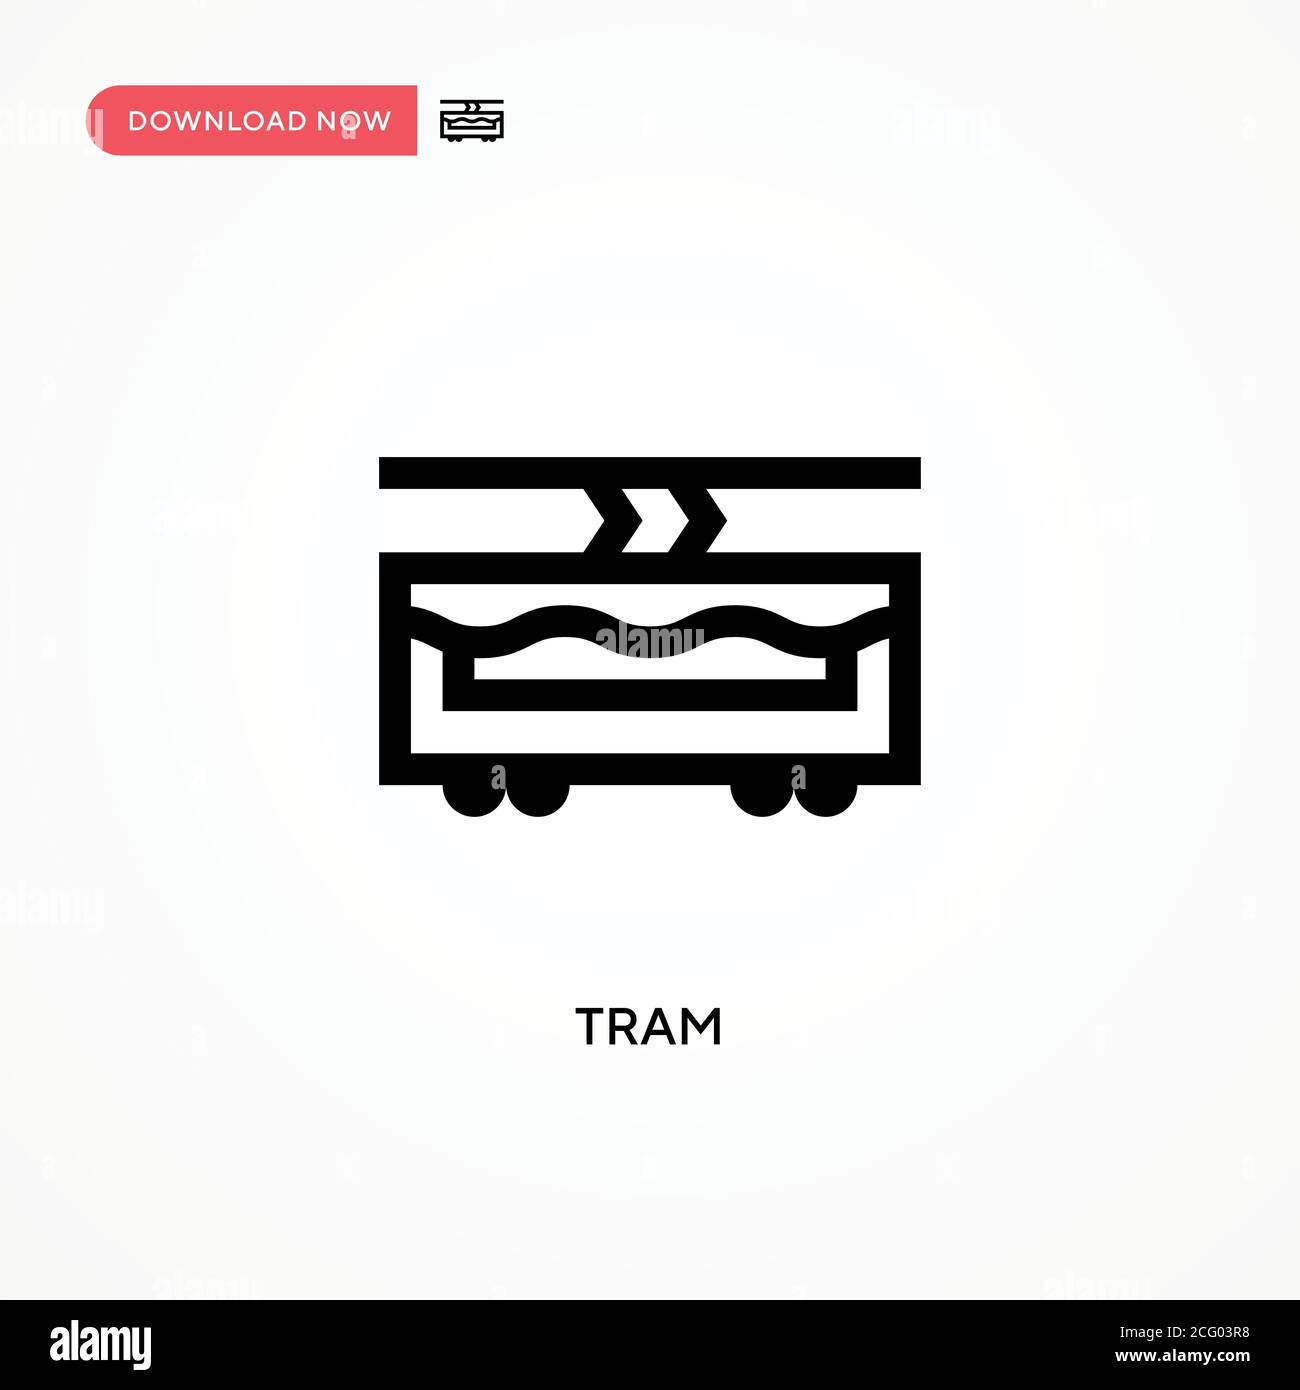 Tram Simple Vektor-Symbol. Moderne, einfache flache Vektor-Illustration für Website oder mobile App Stock Vektor